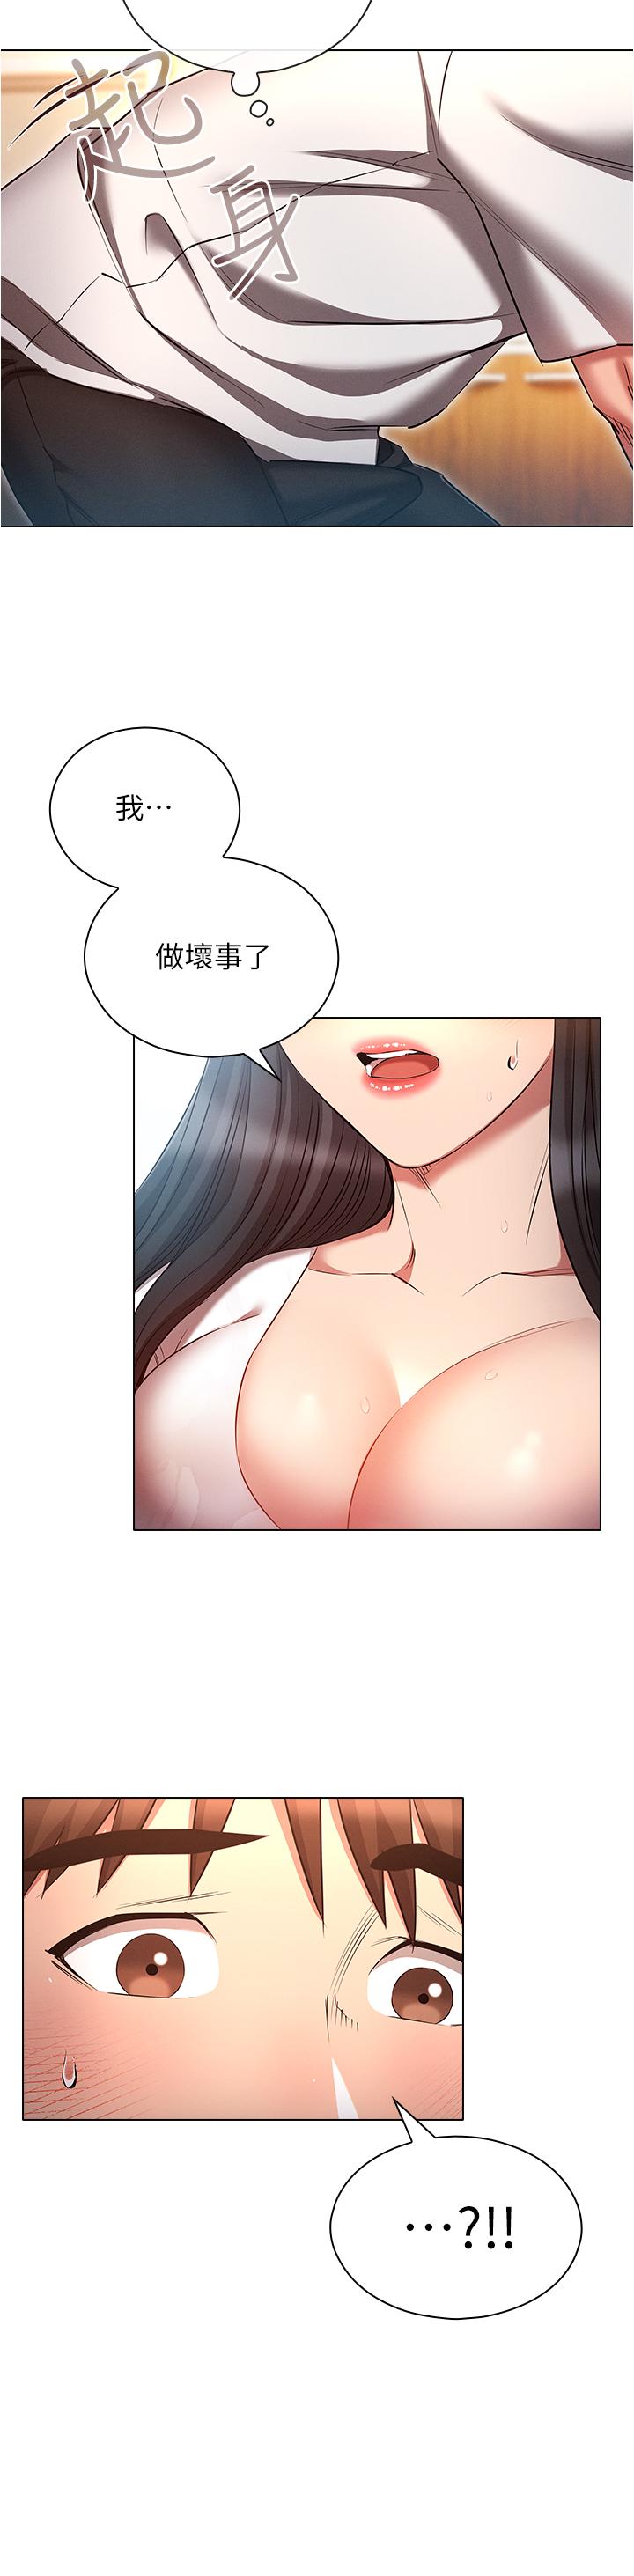 韩国污漫画 魯蛇的多重宇宙 第46话-发情骚女的告白 13